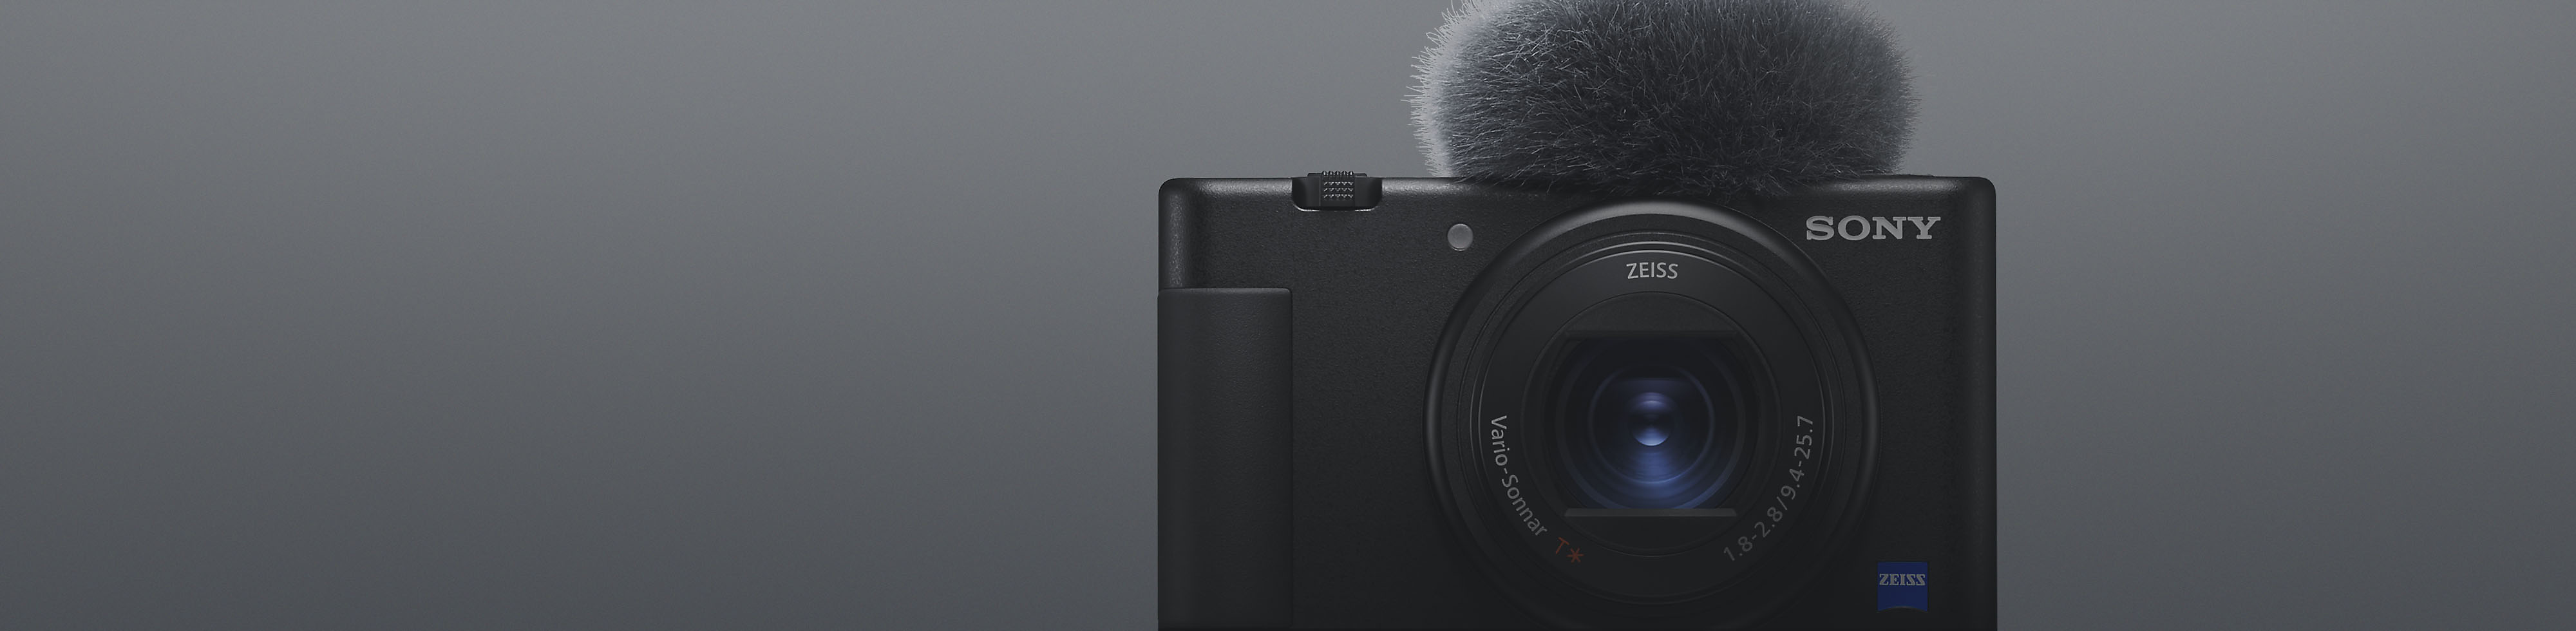 Pogled sprijeda na crni Sonyjev kompaktni fotoaparat s pričvršćenim mikrofonom